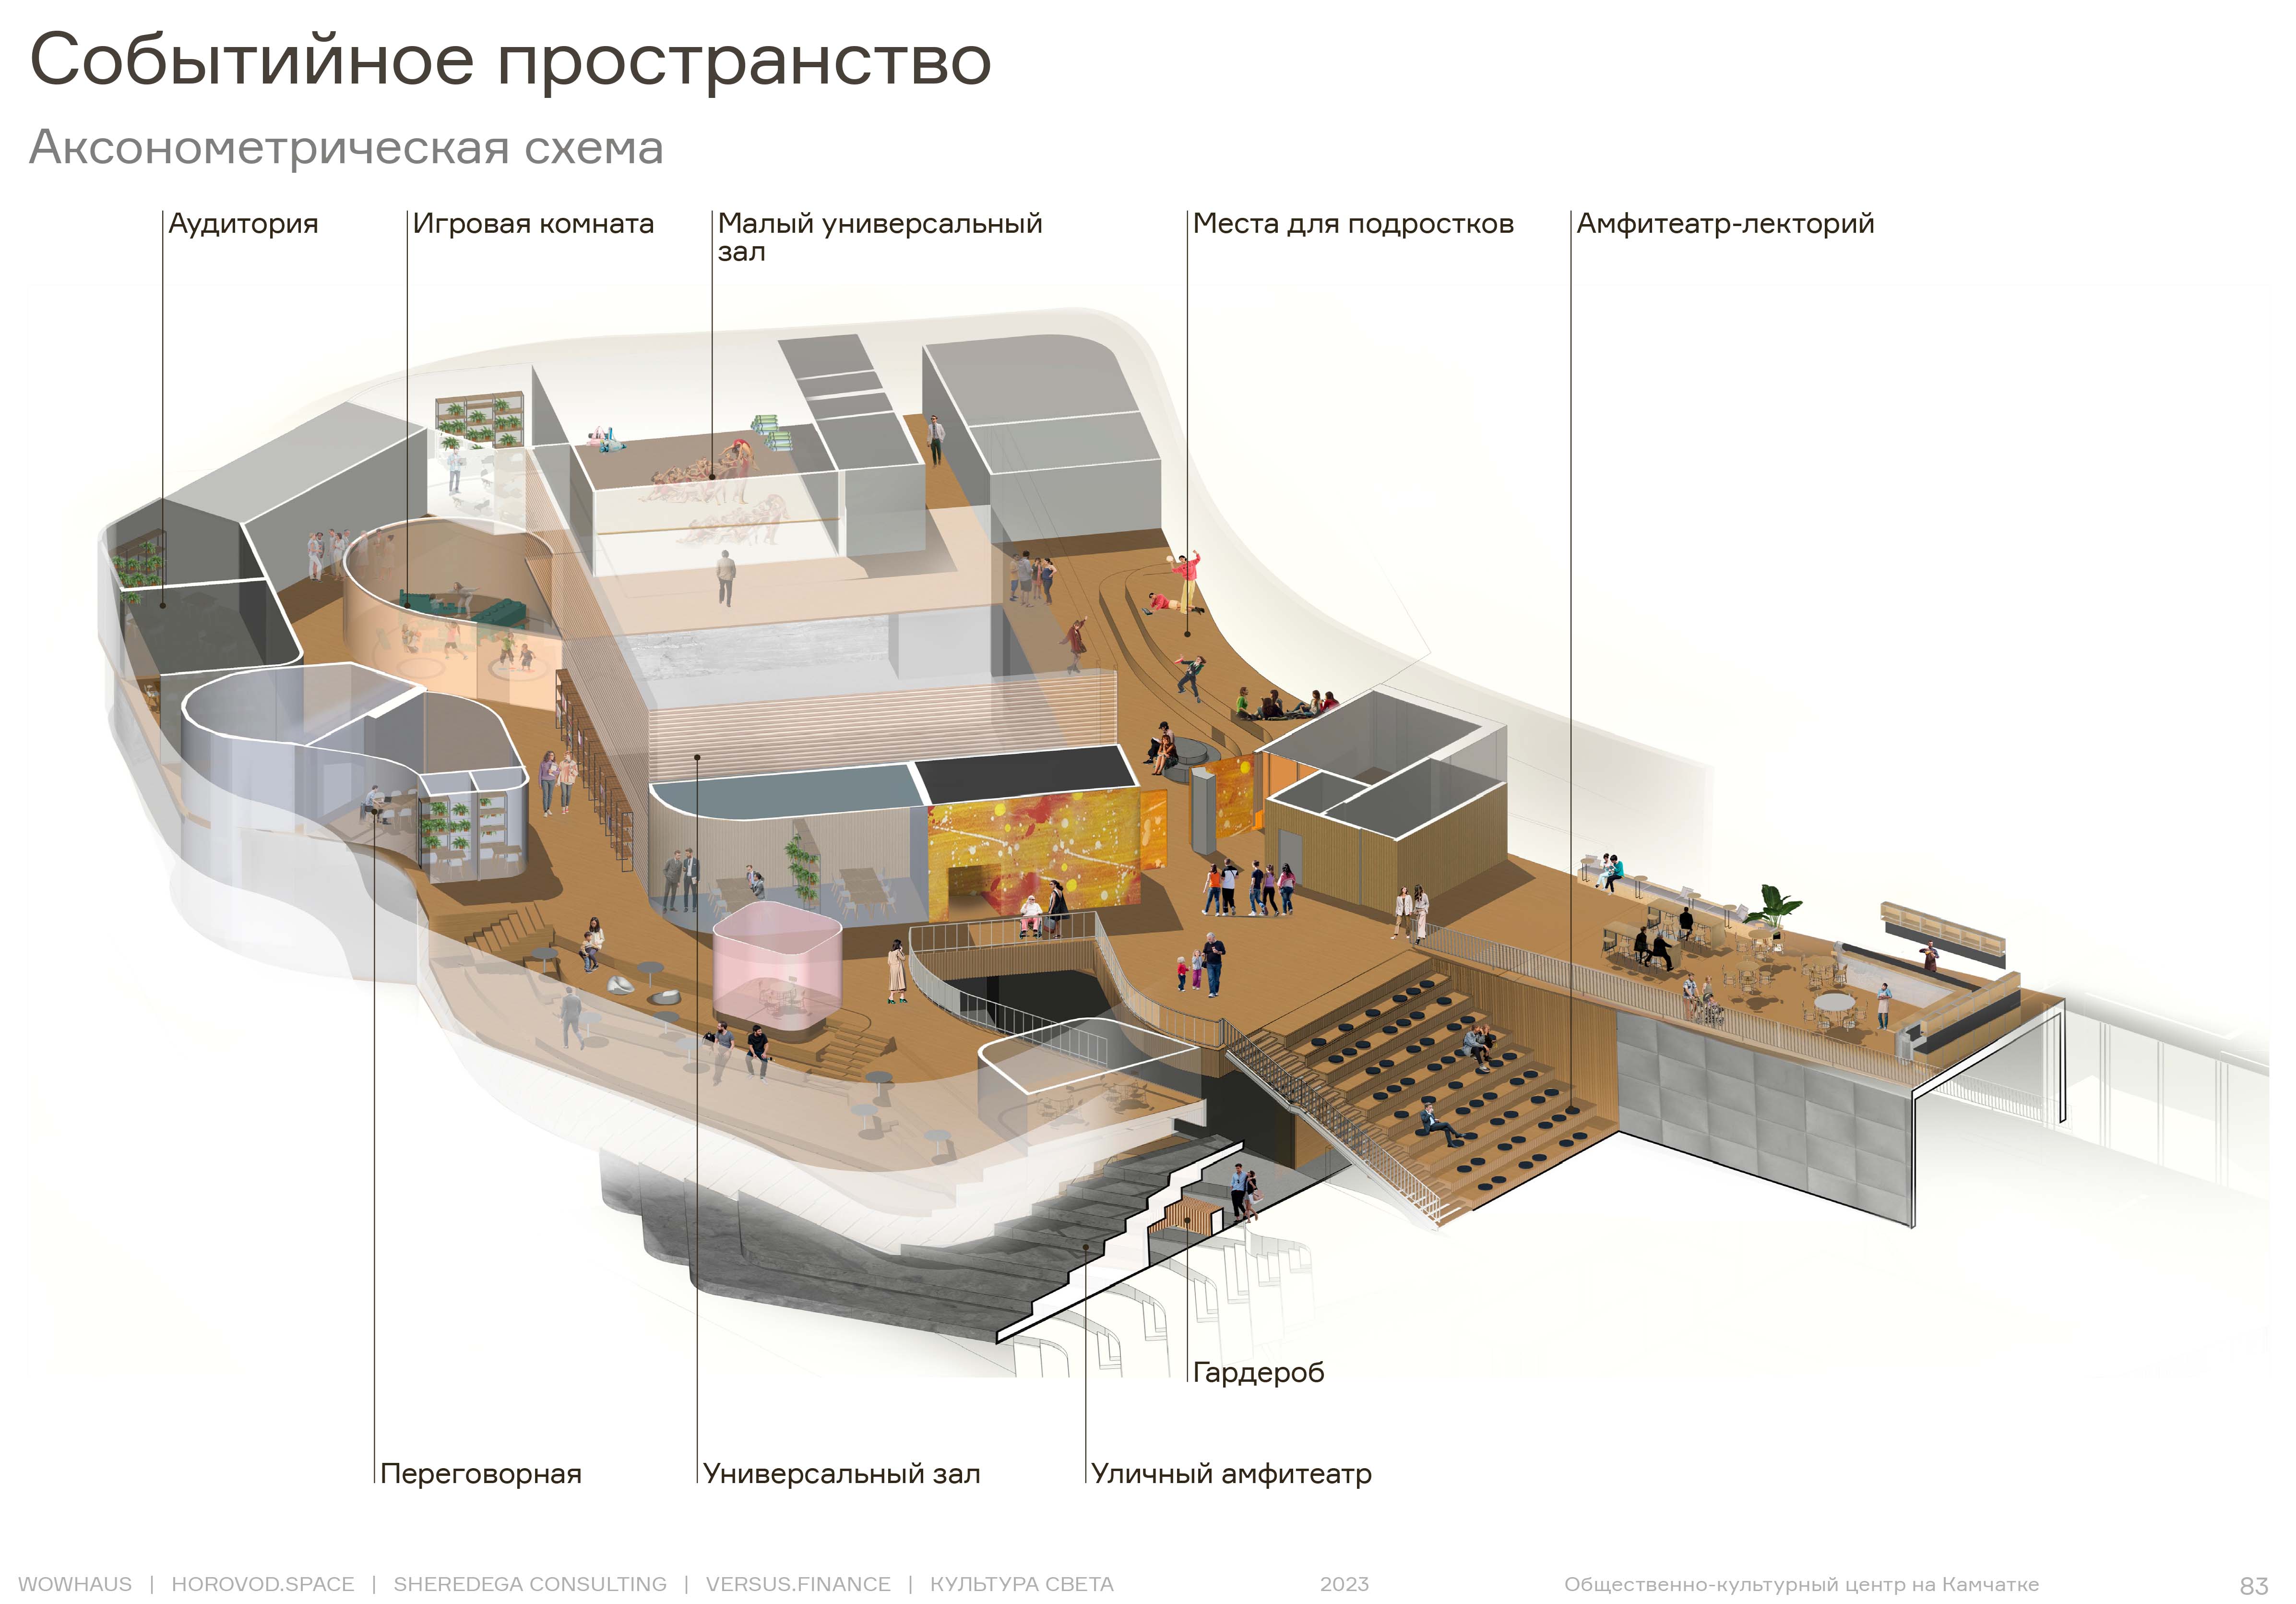 Архитектурное бюро Wowhaus будет проектировать общественно-культурный центр в столице Камчатки